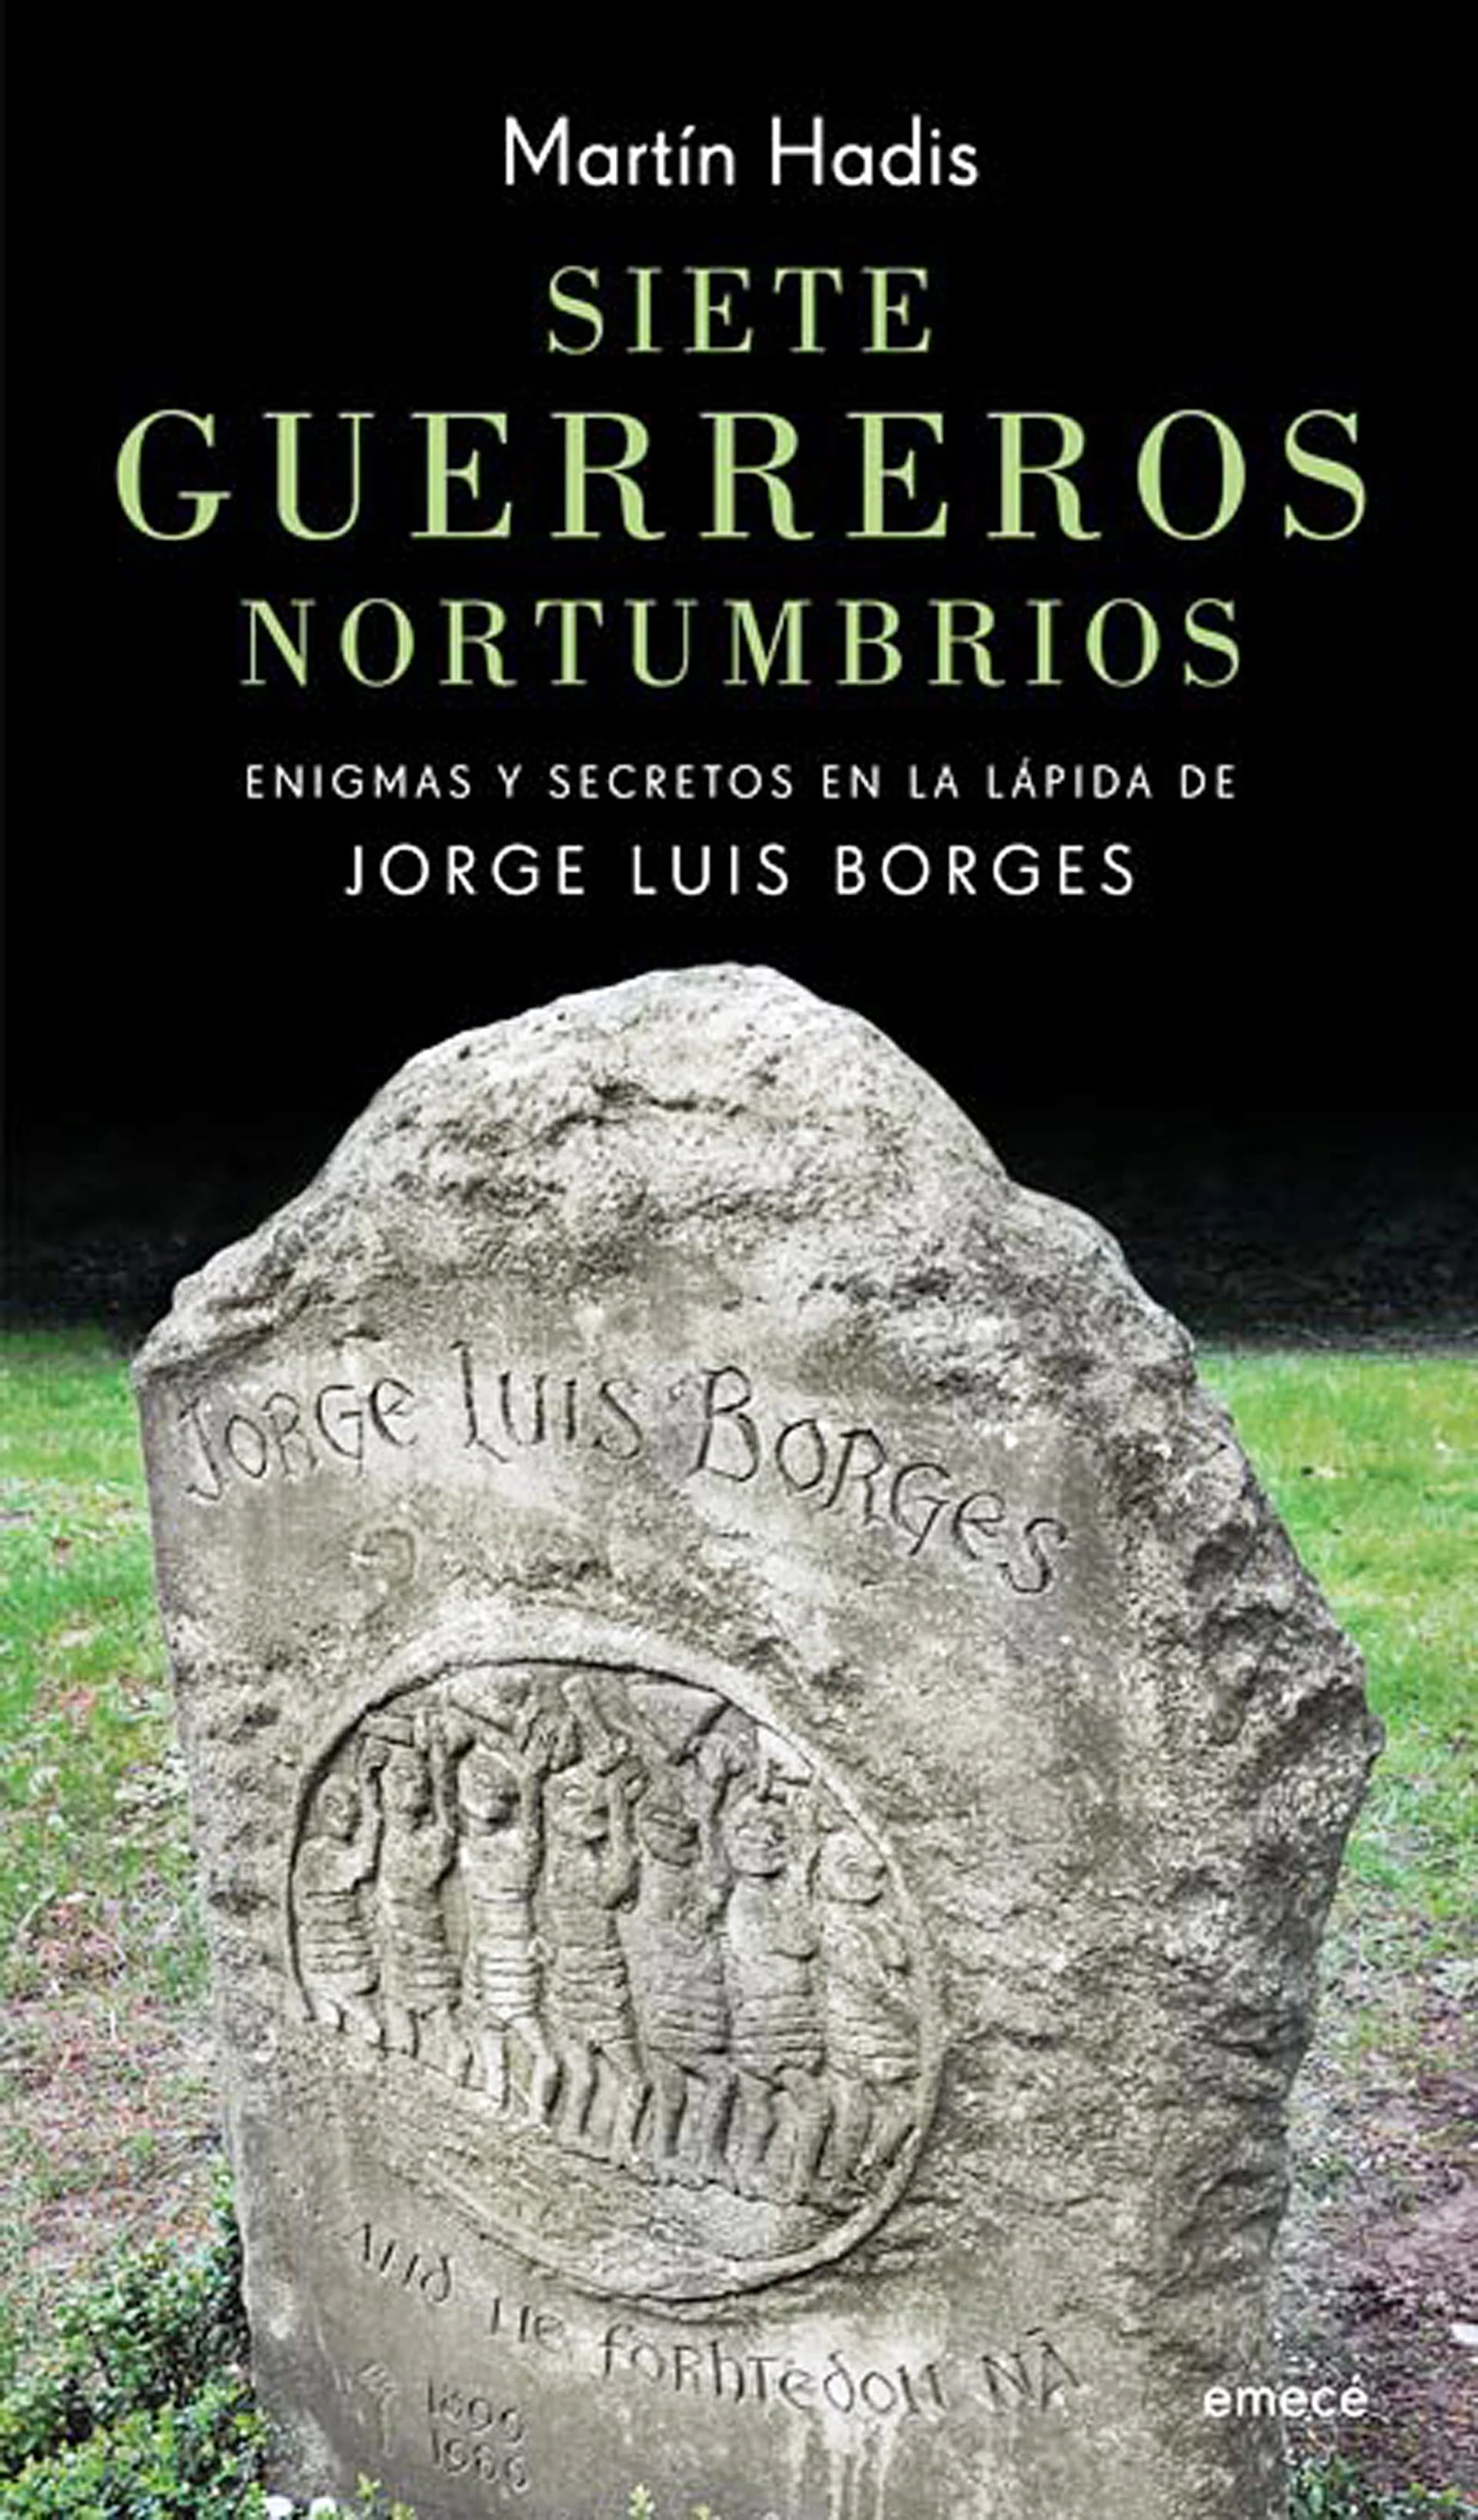 El libro en el que el filólogo Martín Hadis interpreta el sentido de las inscripciones en la lápida de Borges